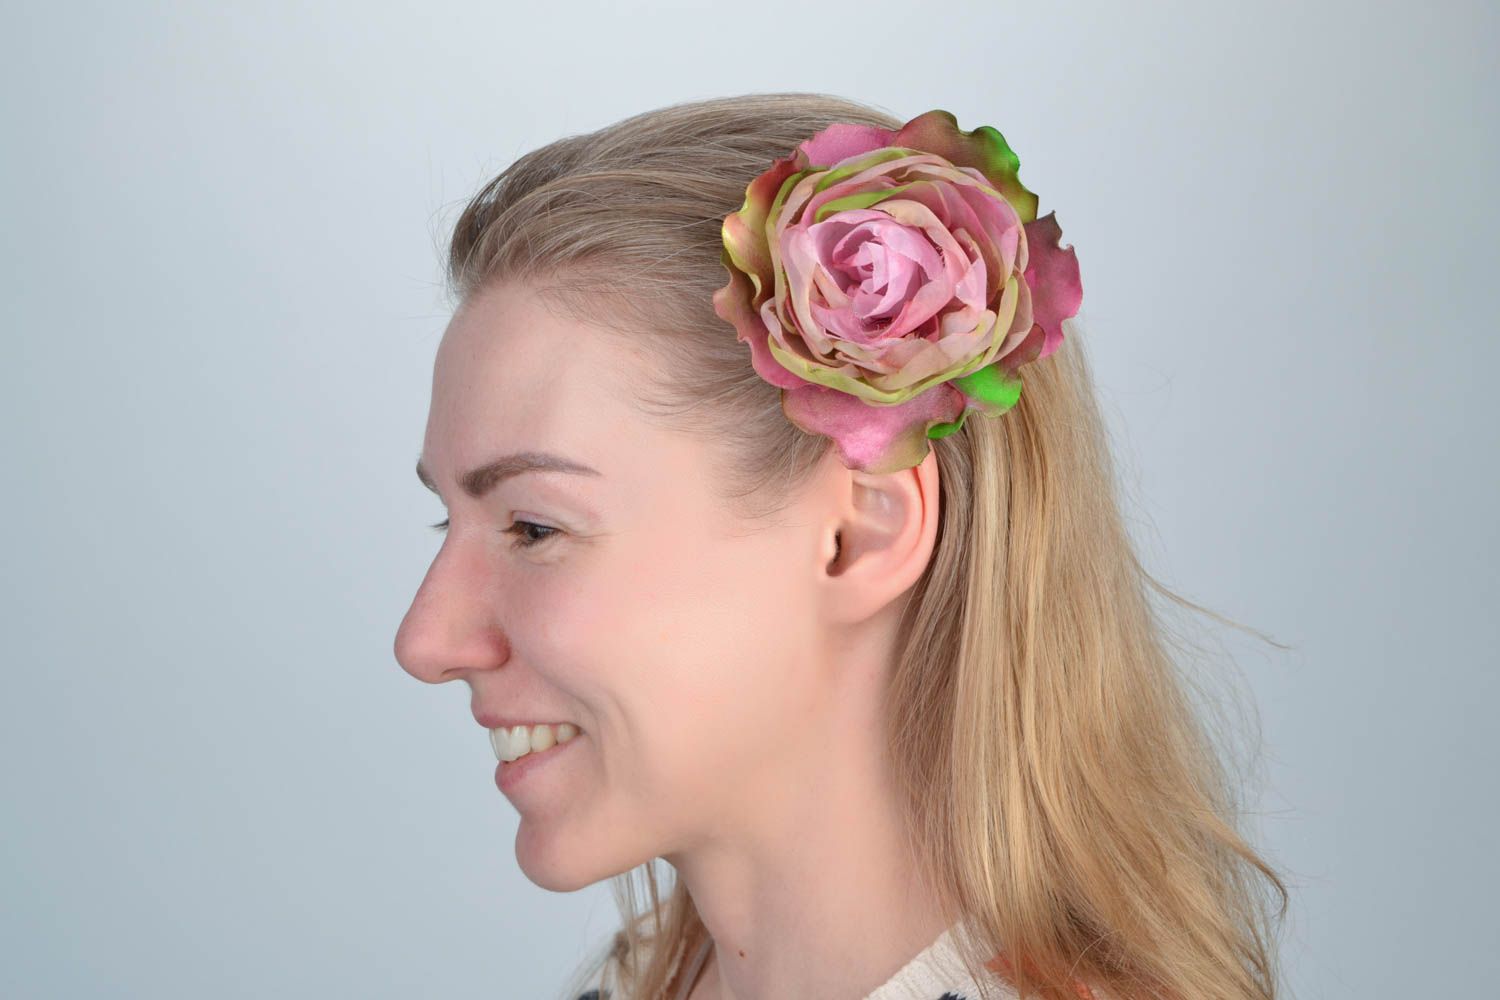 Цветок для волос из органзы и шелка розовый с переливами в технике батик фото 1